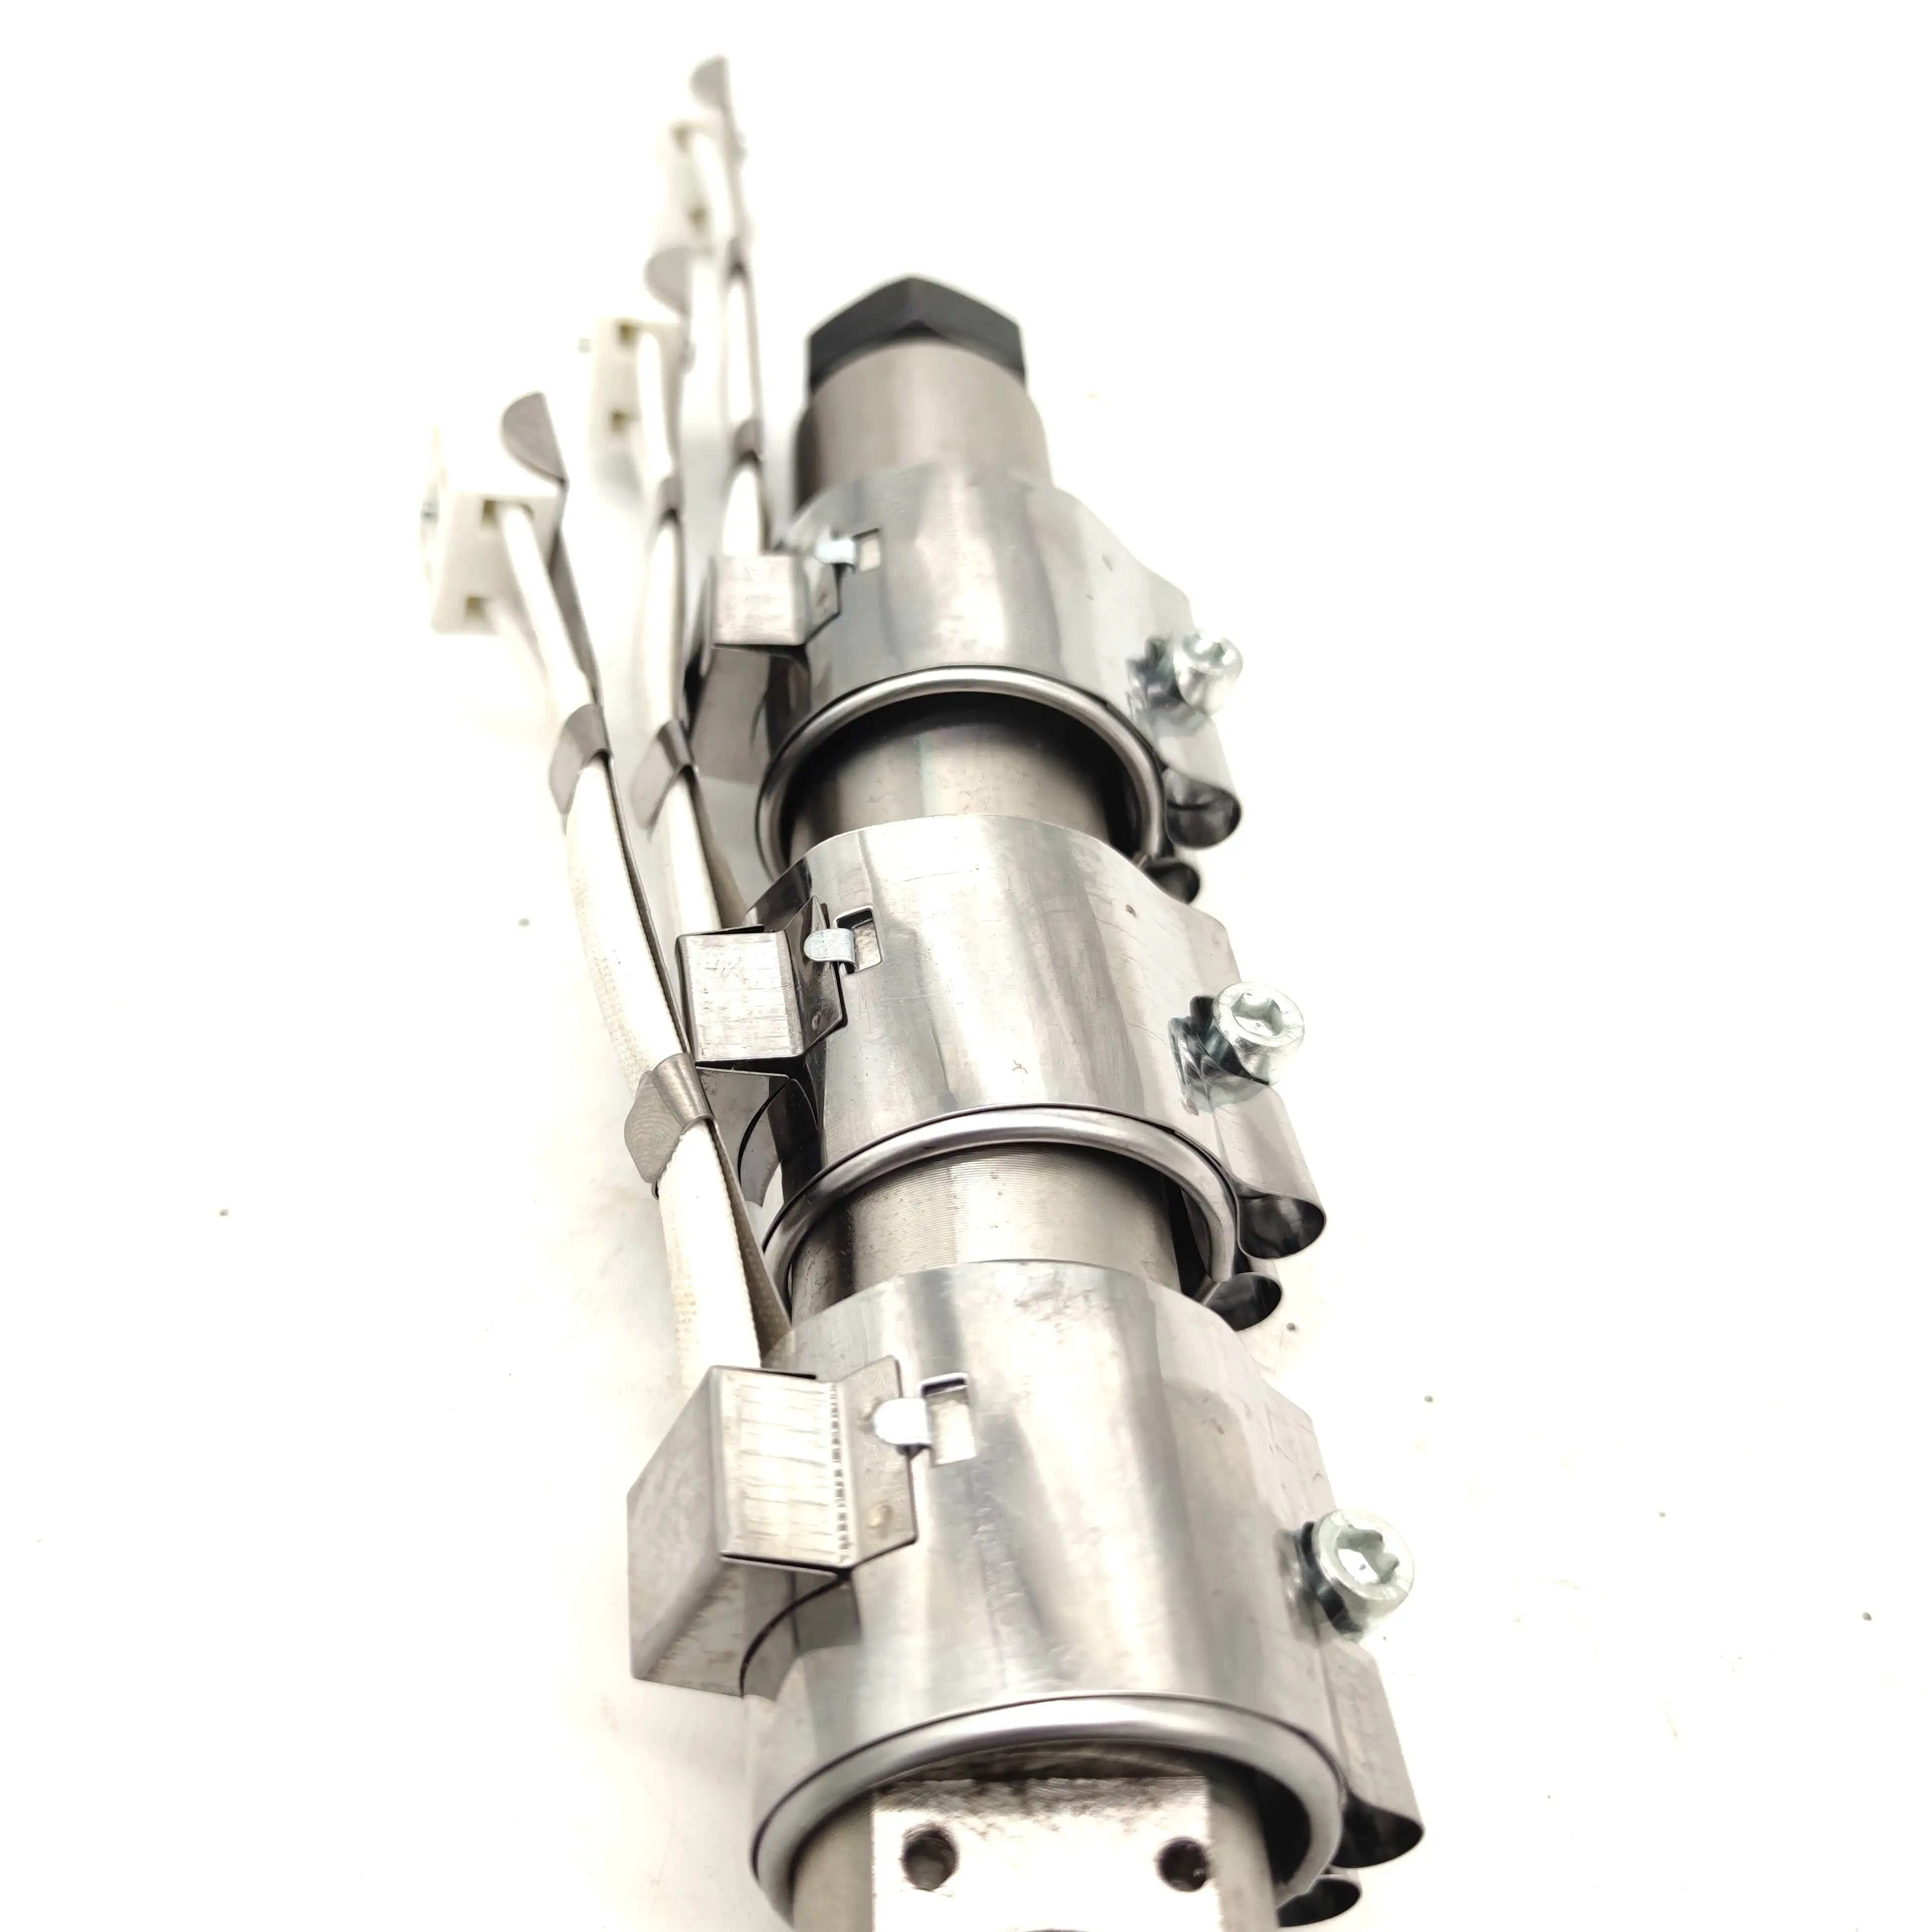 

Винт и цилиндр экструдера диаметром 20 мм с набором сопел 1,75/3 мм и 3 ленточными обогревателями D40L40, 220 В, 150 Вт